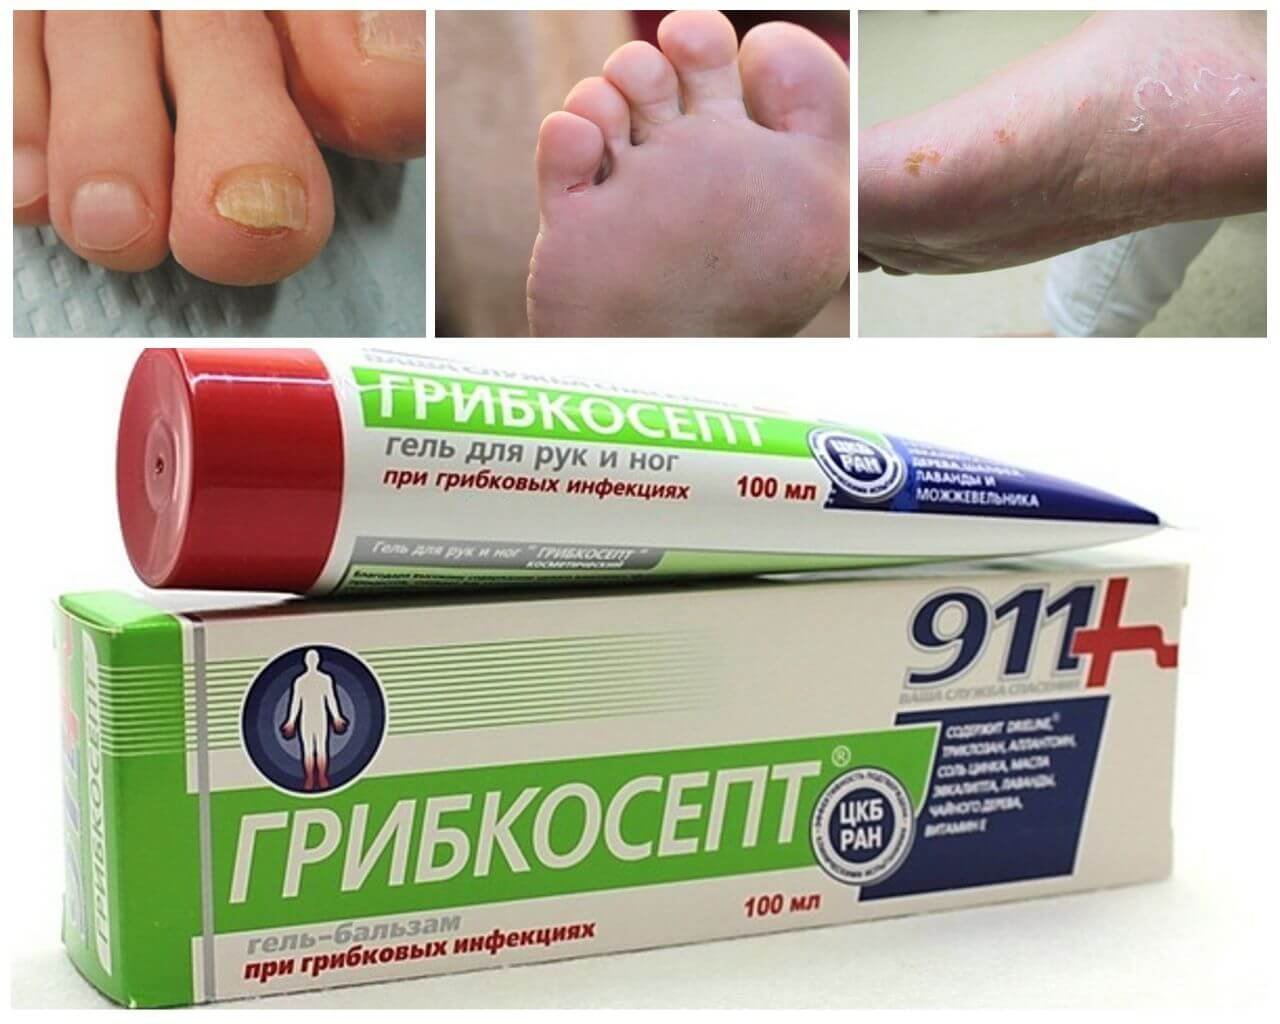 Грибок кожи лечение препараты недорогие но эффективные. Мазь 911 грибкосепт. Грибкосепт 911 от грибка ногтей. Противогрибковый крем для ног.